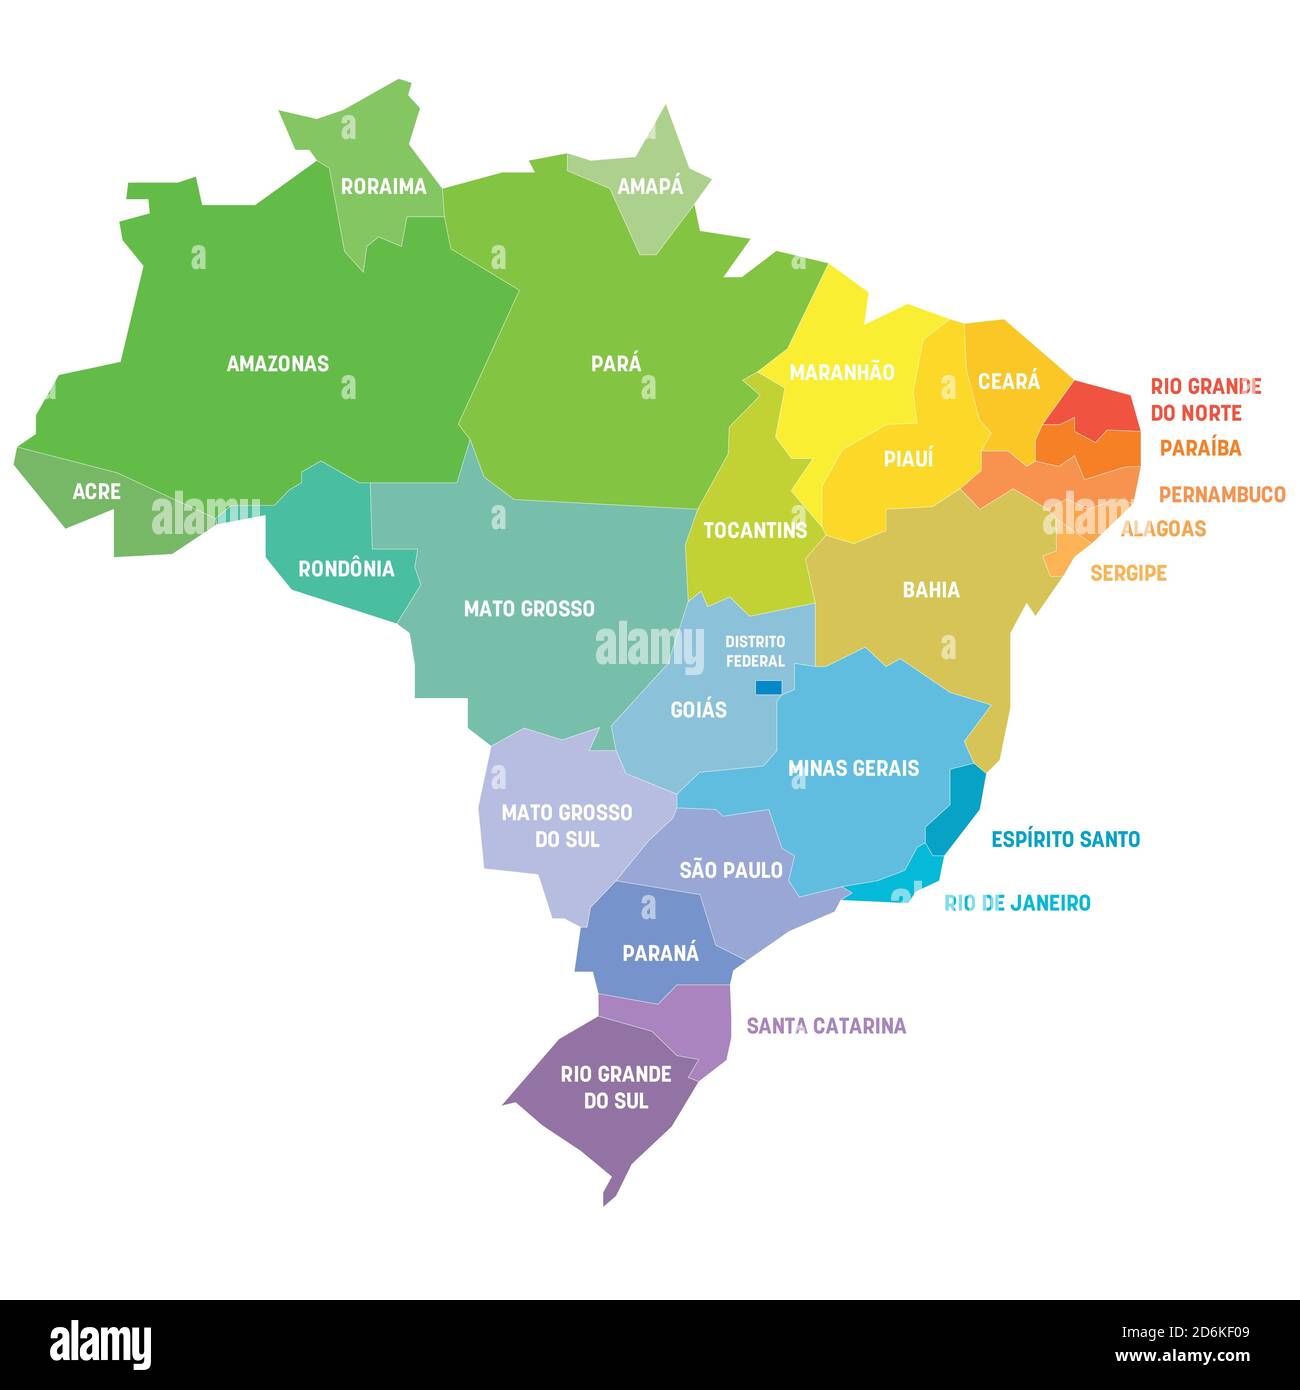 Bunte politische Landkarte von Brasilien. Verwaltungsabteilungen - Staaten. Einfache flache Vektorkarte mit Beschriftungen. Stock Vektor